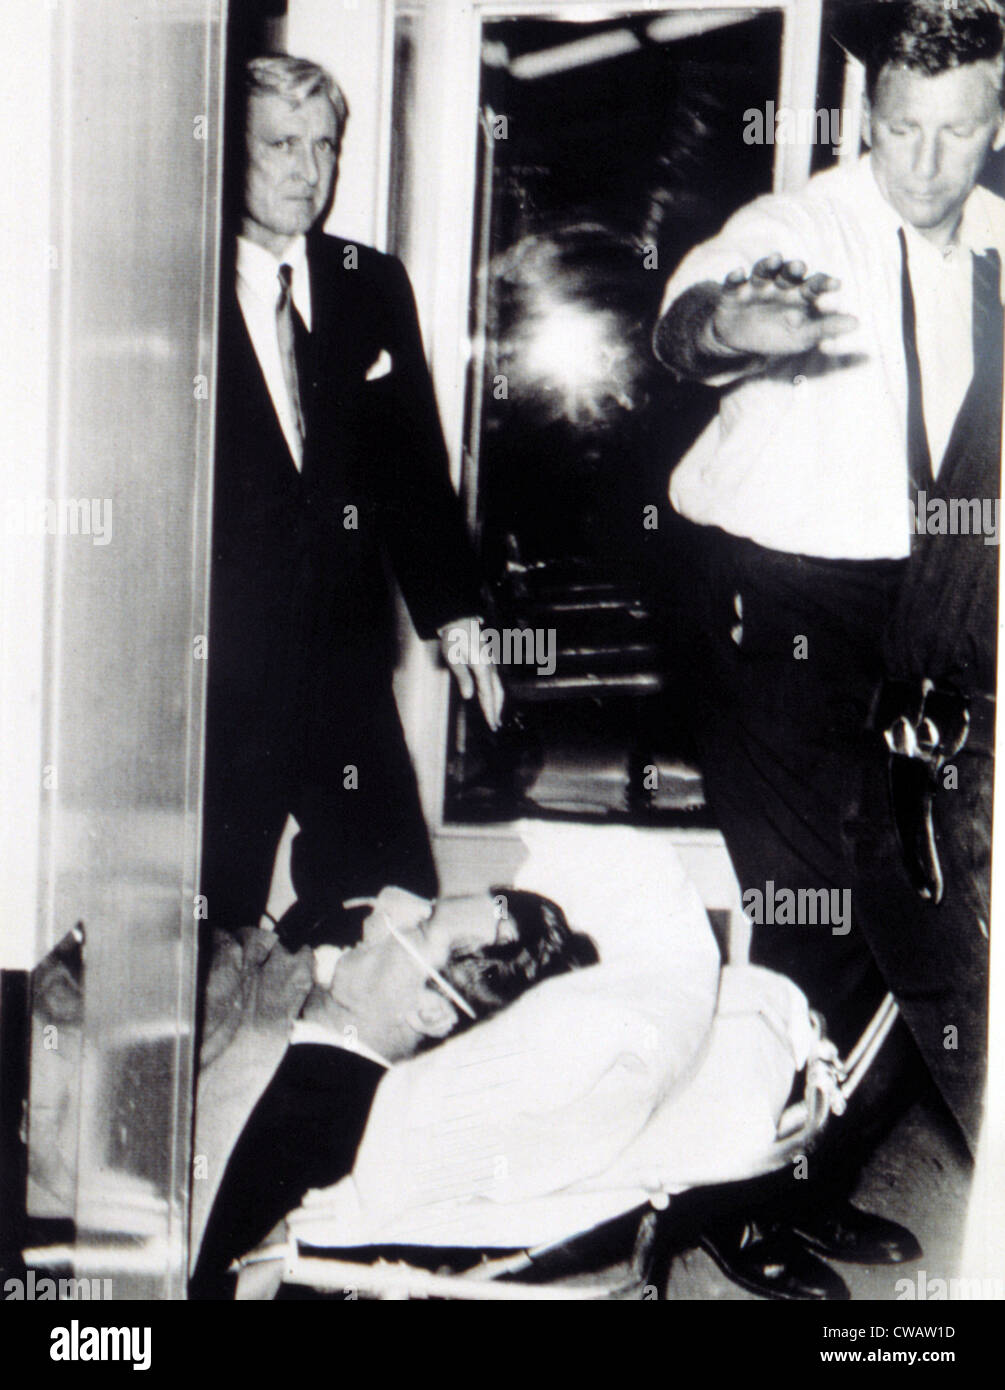 ROBERT KENNEDY, transportés à l'hôpital après avoir été abattu, le 5 juin 1968. Avec la permission de la CSU : Archives / Everett Collection Banque D'Images